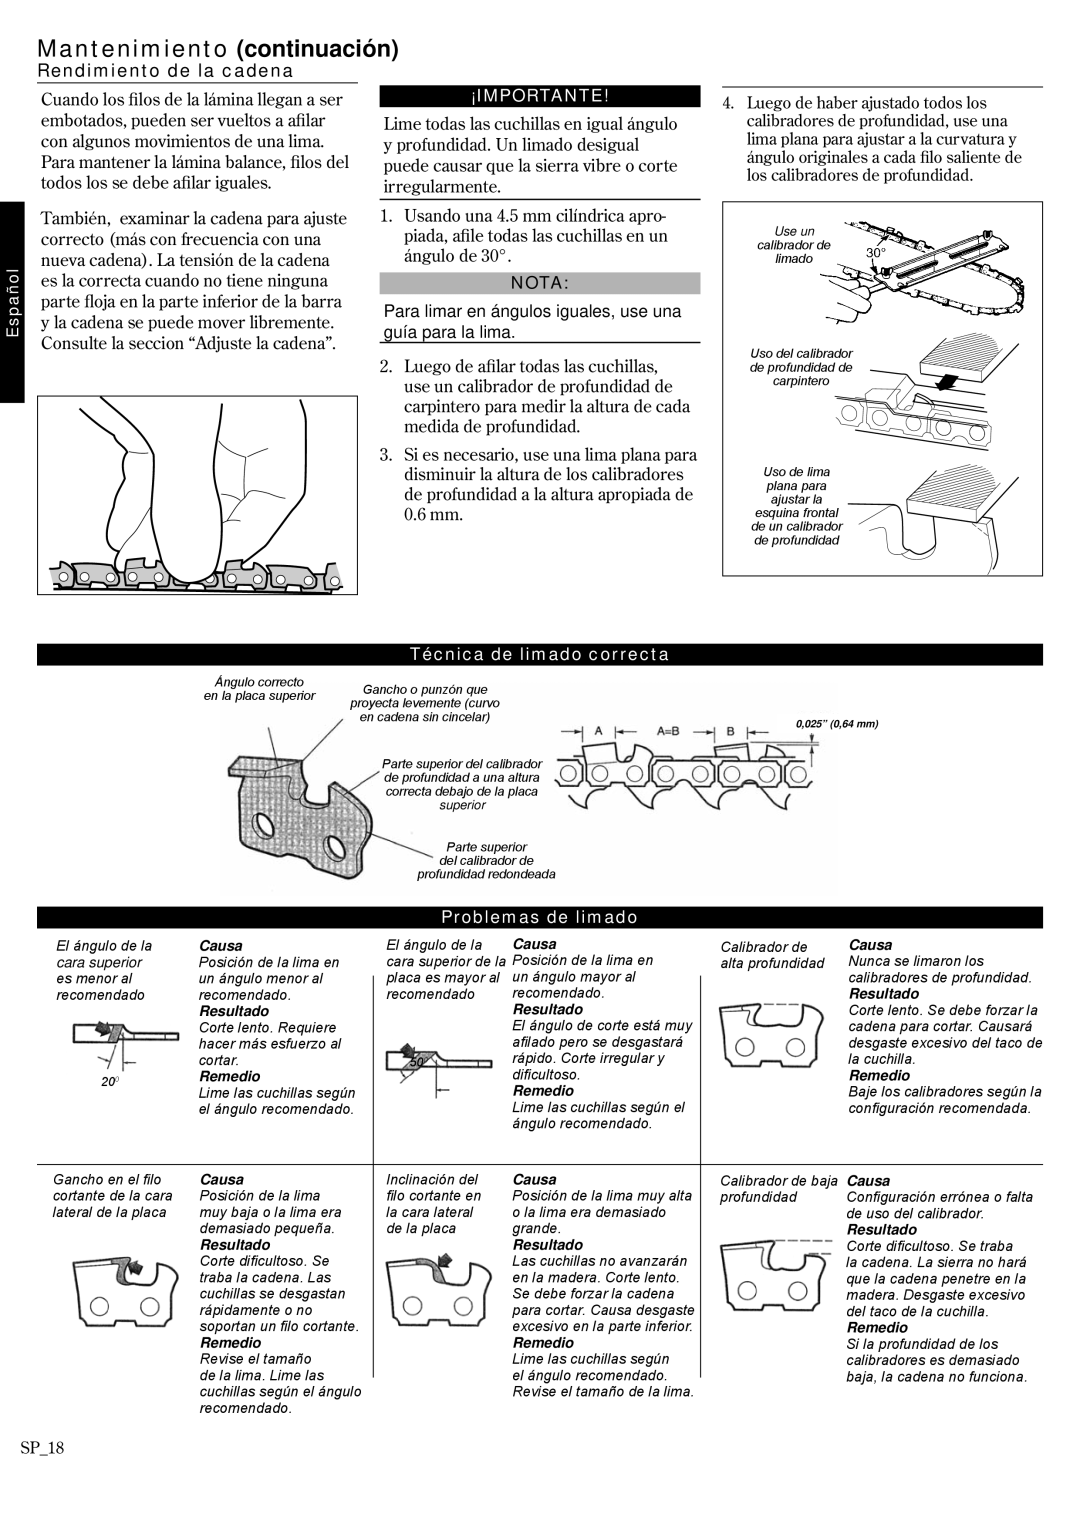 Shindaiwa 62891-94311 manual Rendimiento de la cadena, Técnica de limado correcta, Problemas de limado, ¡Importante, Nota 